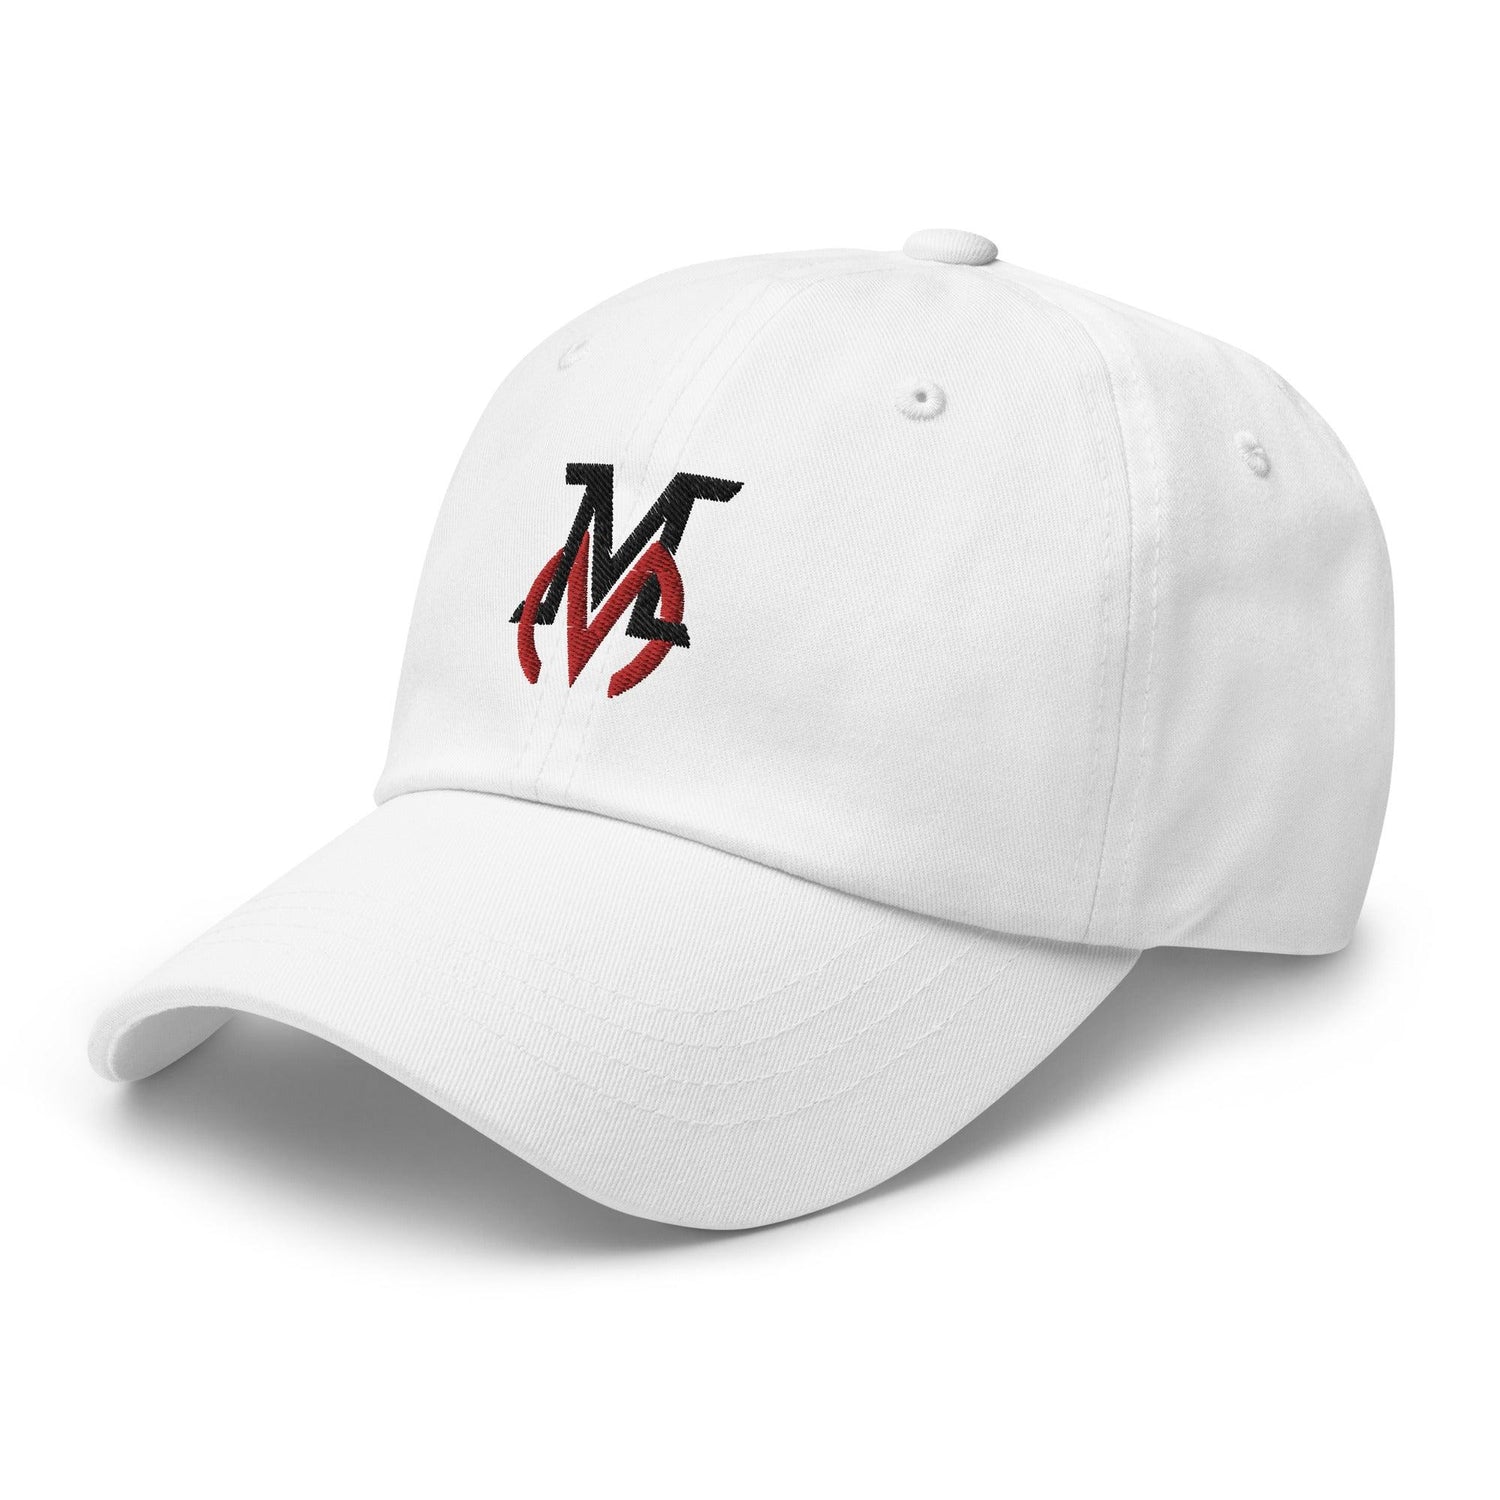 Mike Minor "Wind Up" hat - Fan Arch